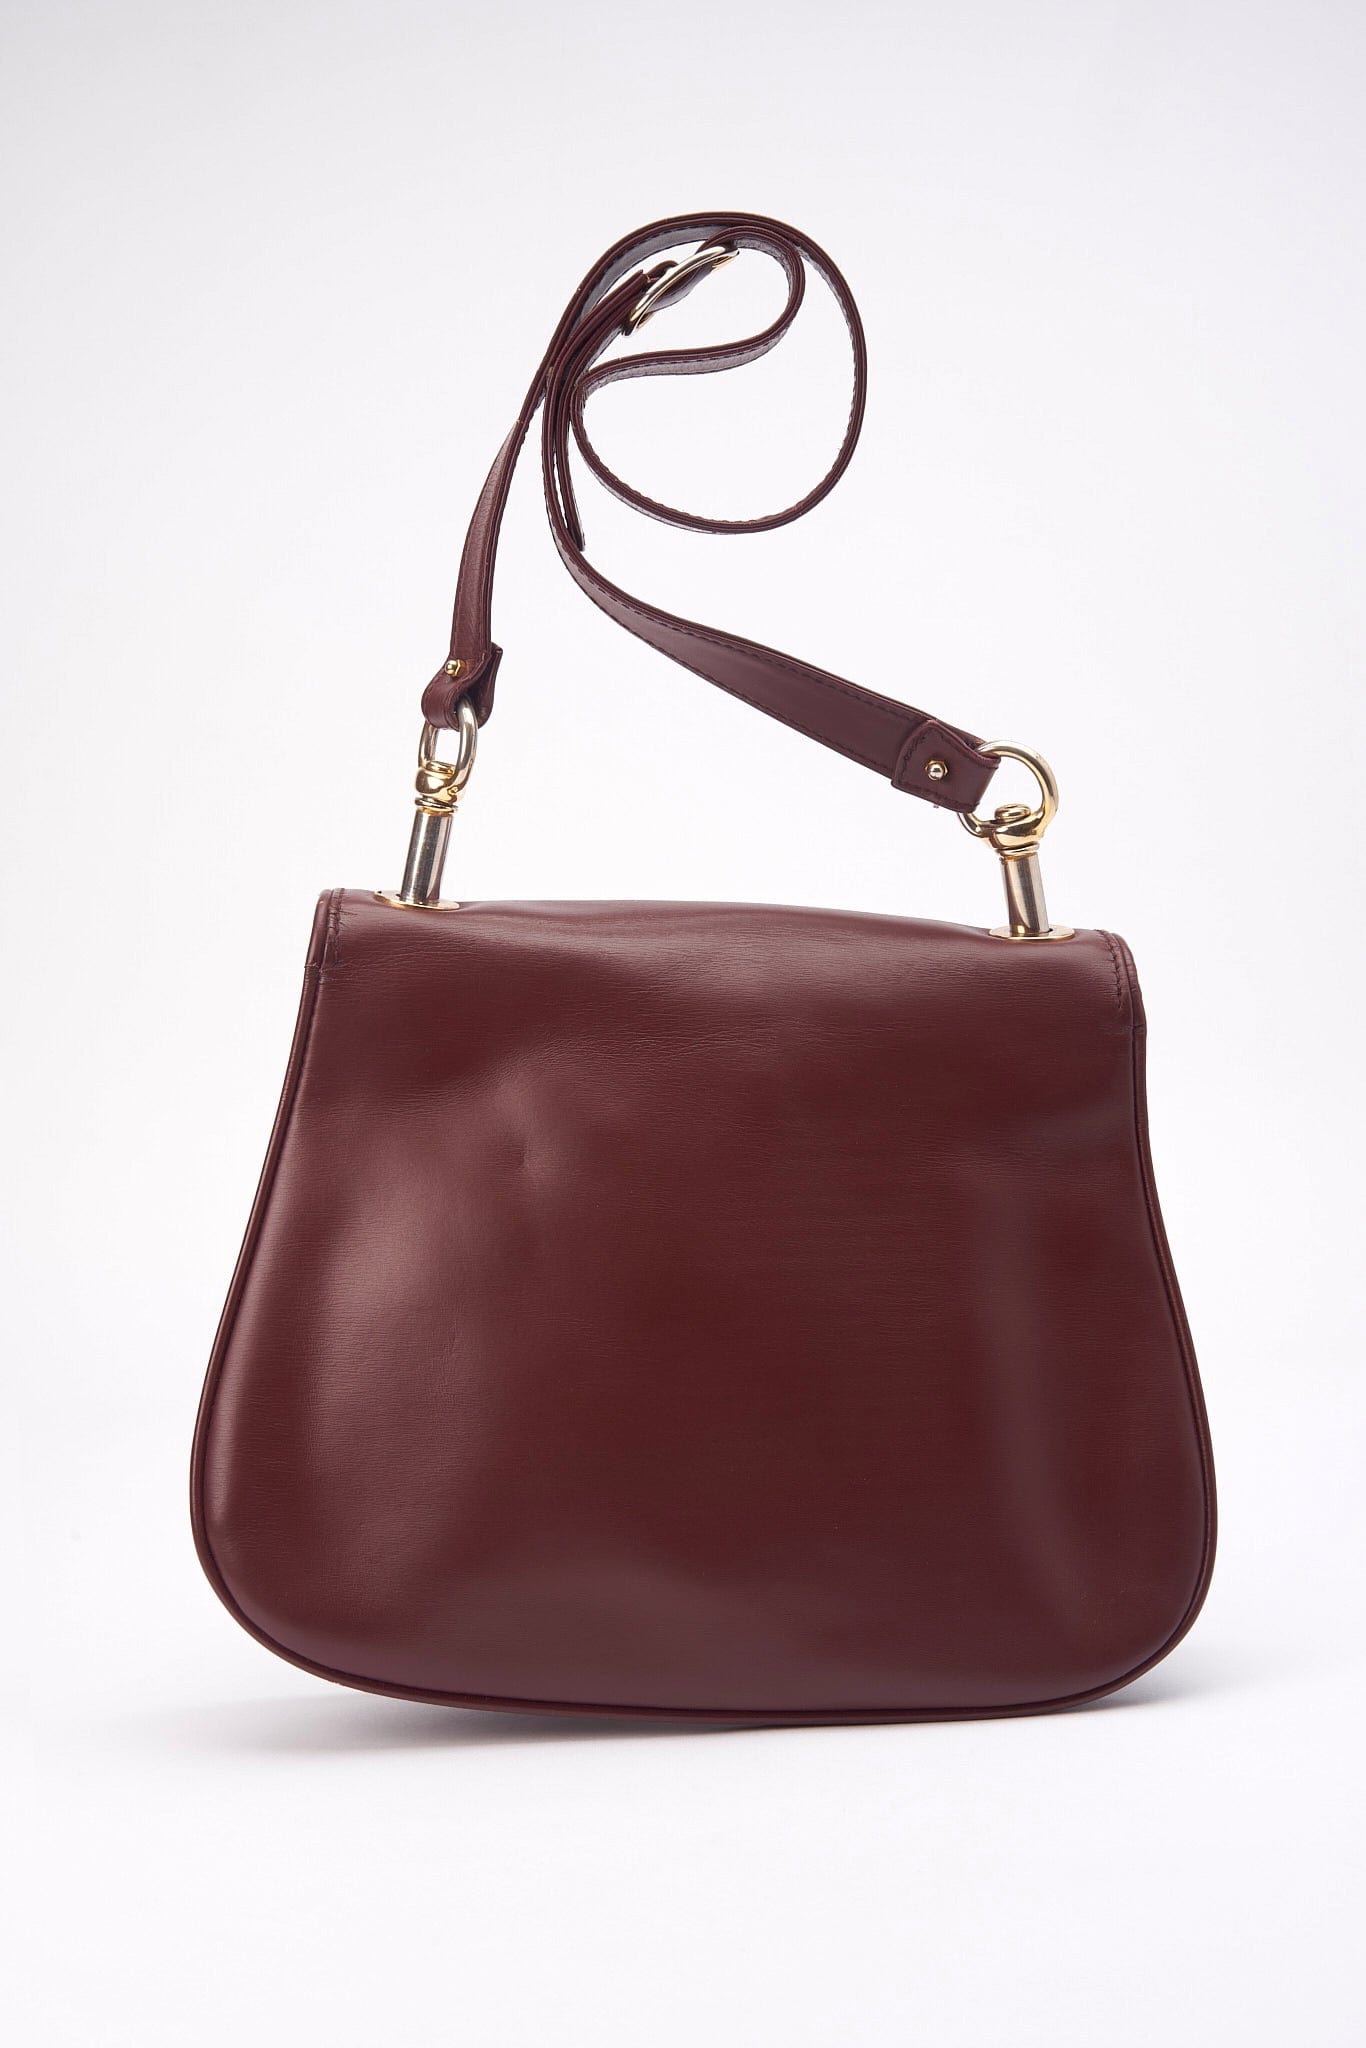 Vintage Gucci Blondie Leather Burgundy Shoulder Bag